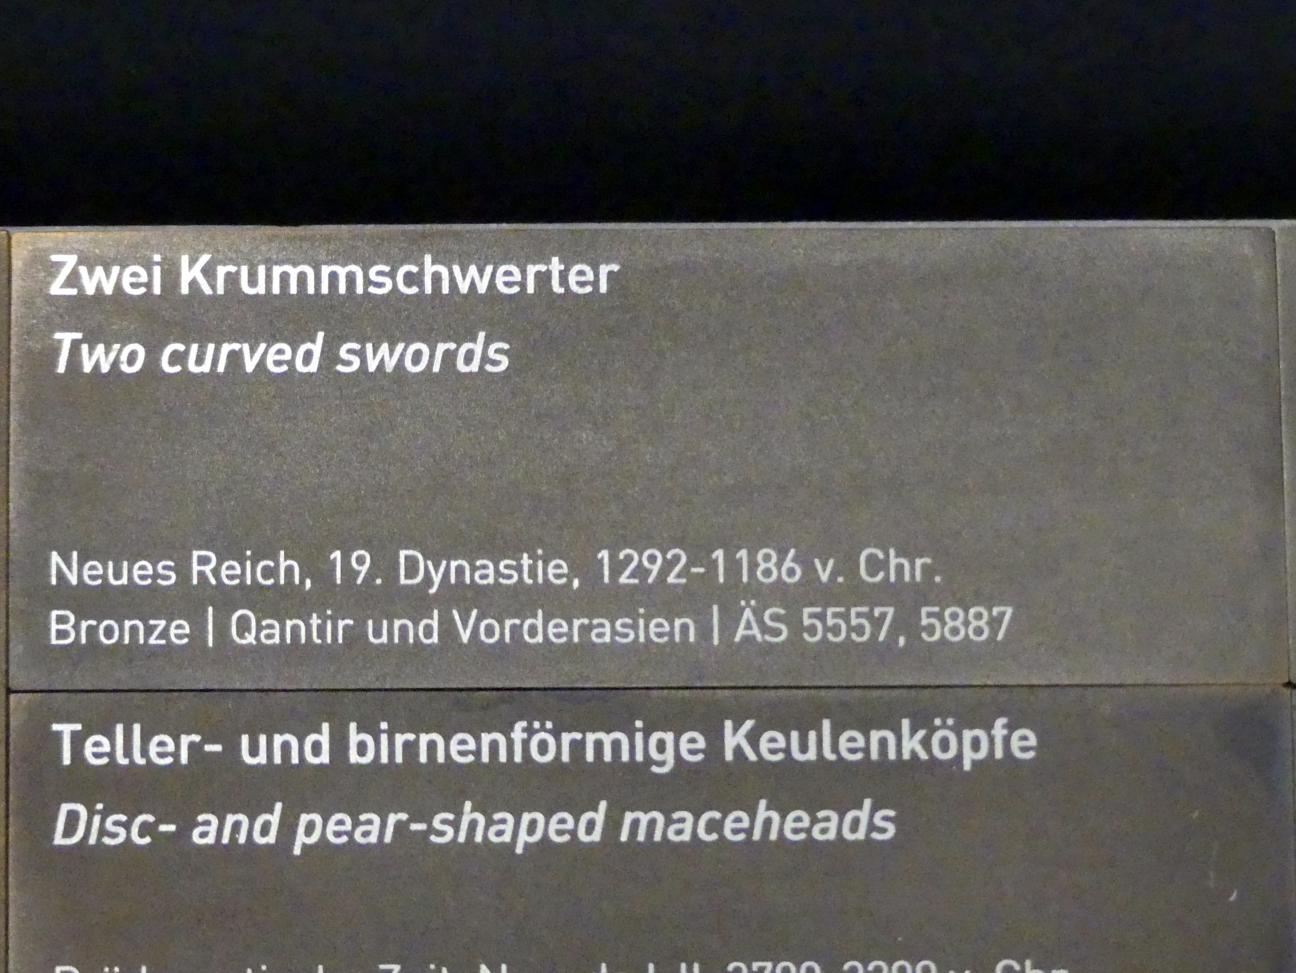 Zwei Krummschwerter, 19. Dynastie, 953 - 887 v. Chr., 1292 - 1186 v. Chr., Bild 2/2